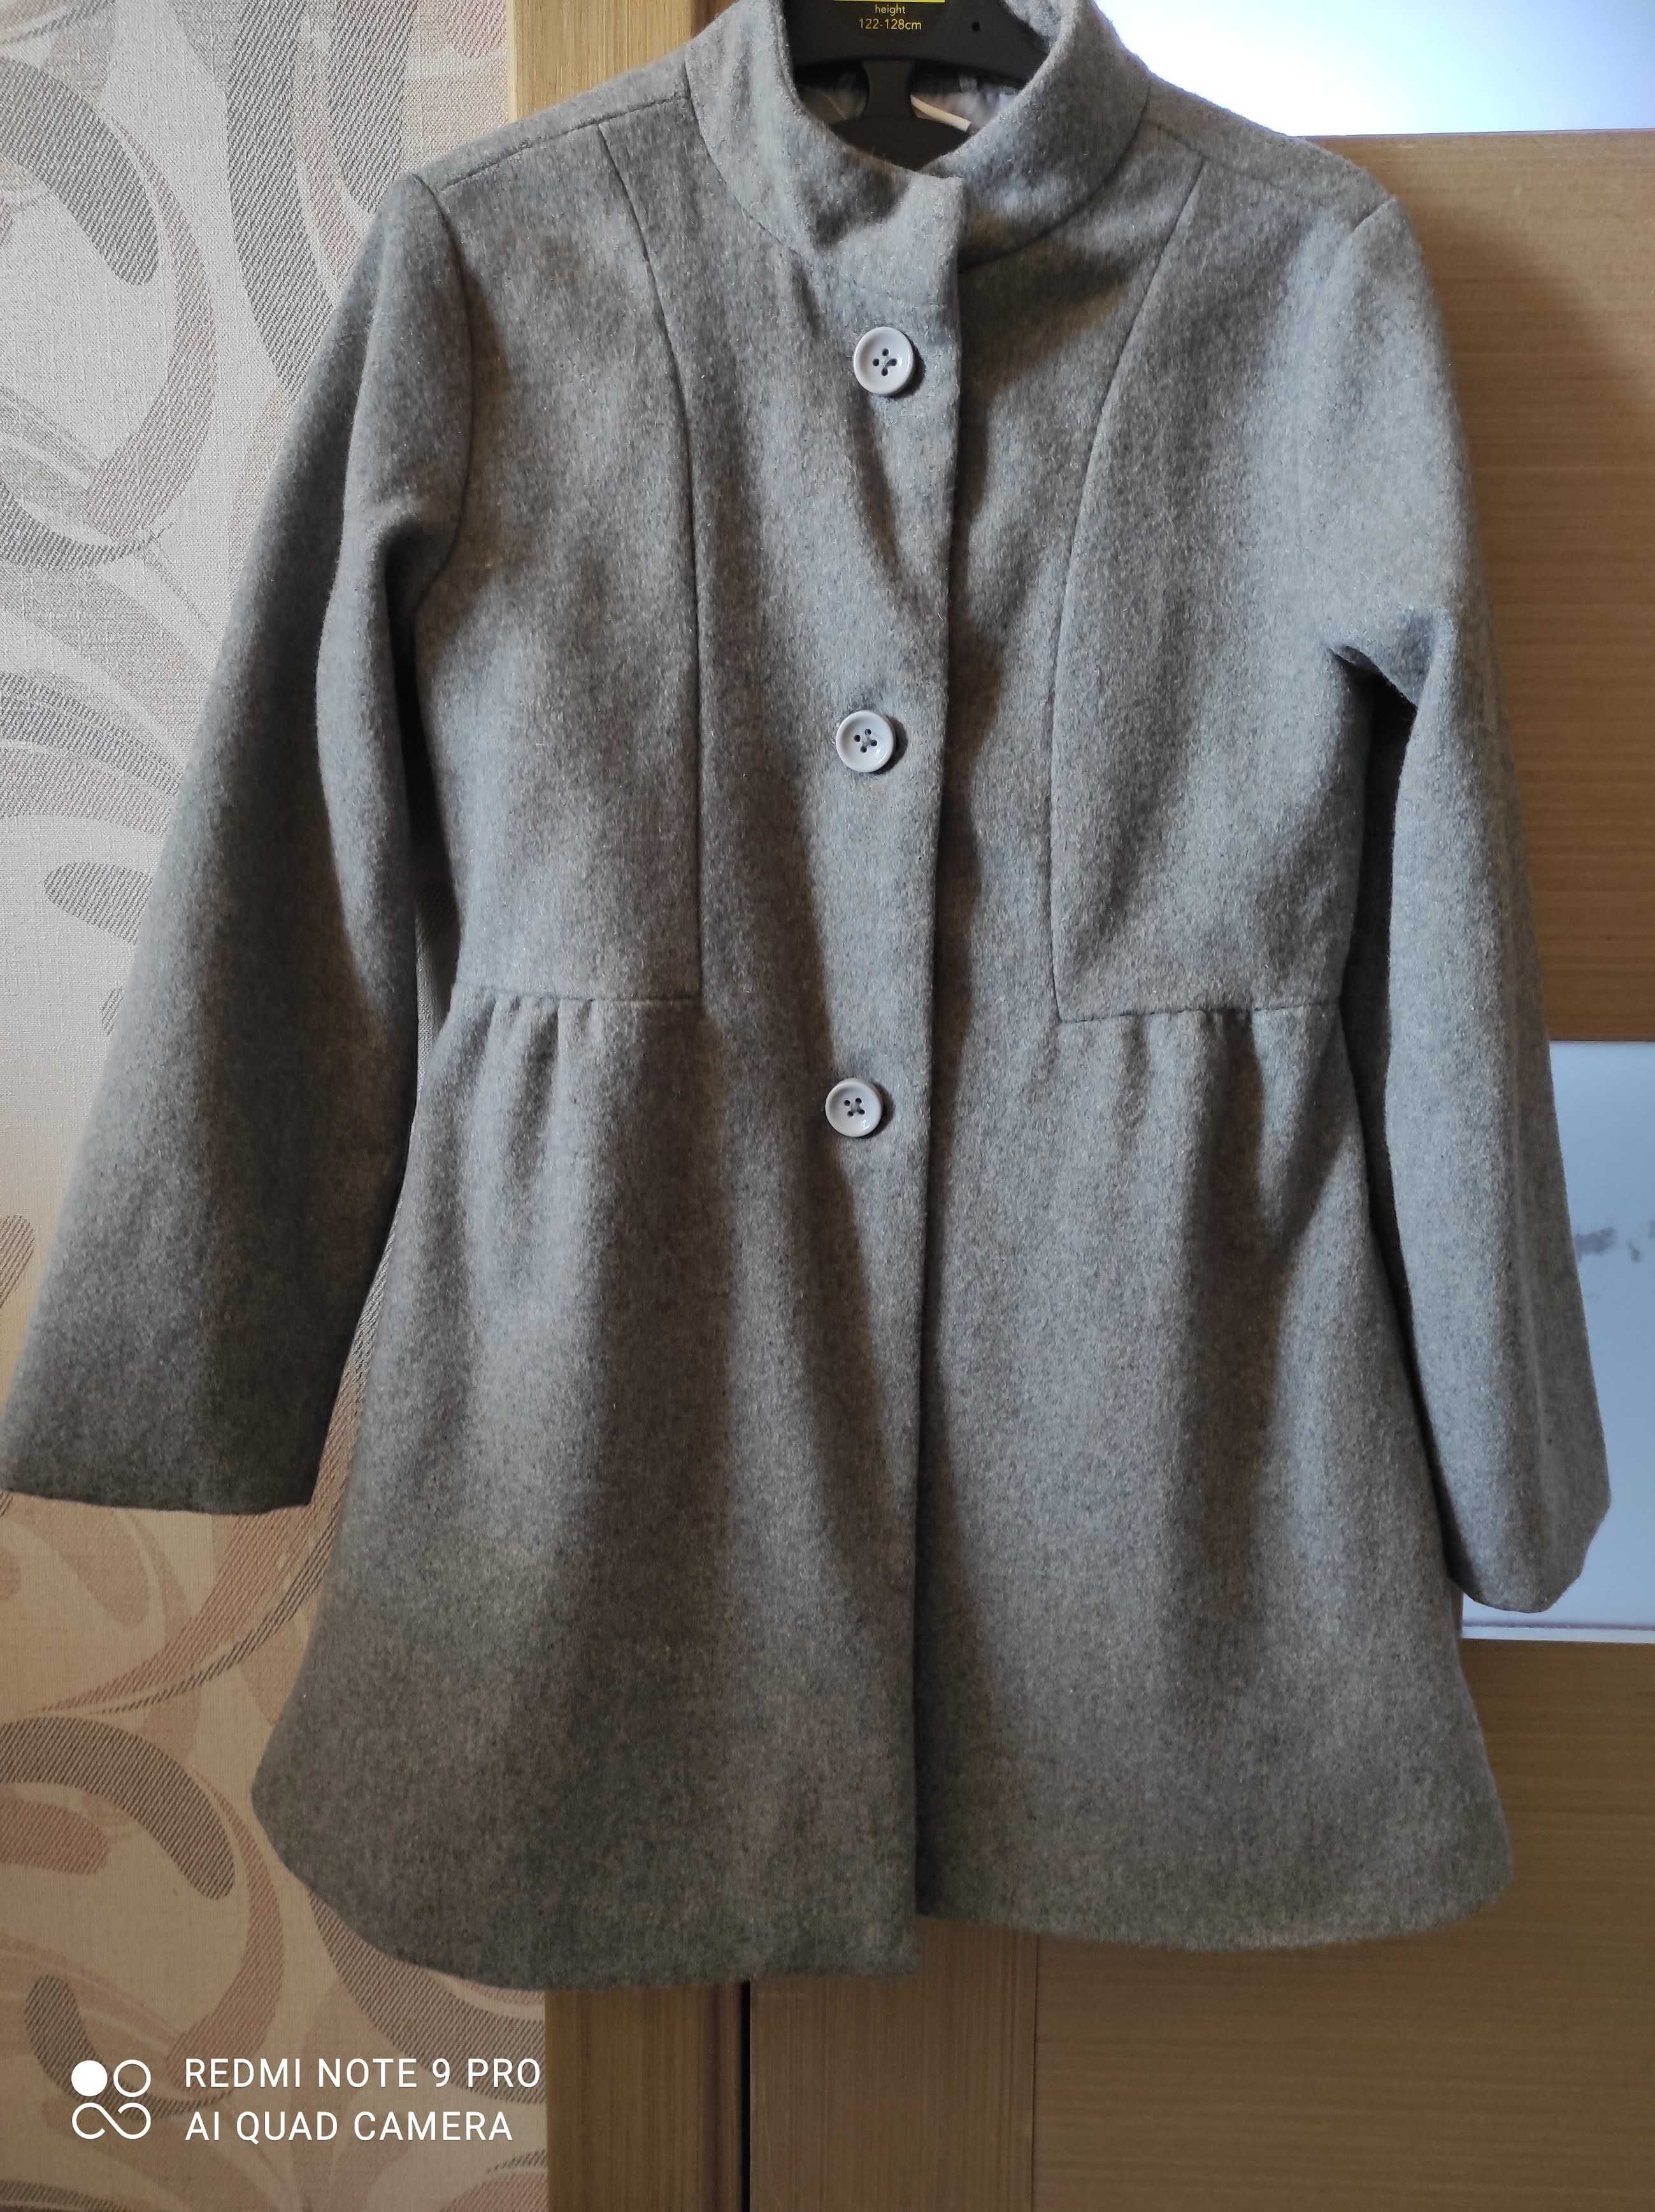 Пальто демисезонное для девочки Crazy8, можно с 6 лет, размер 7-8 Т.